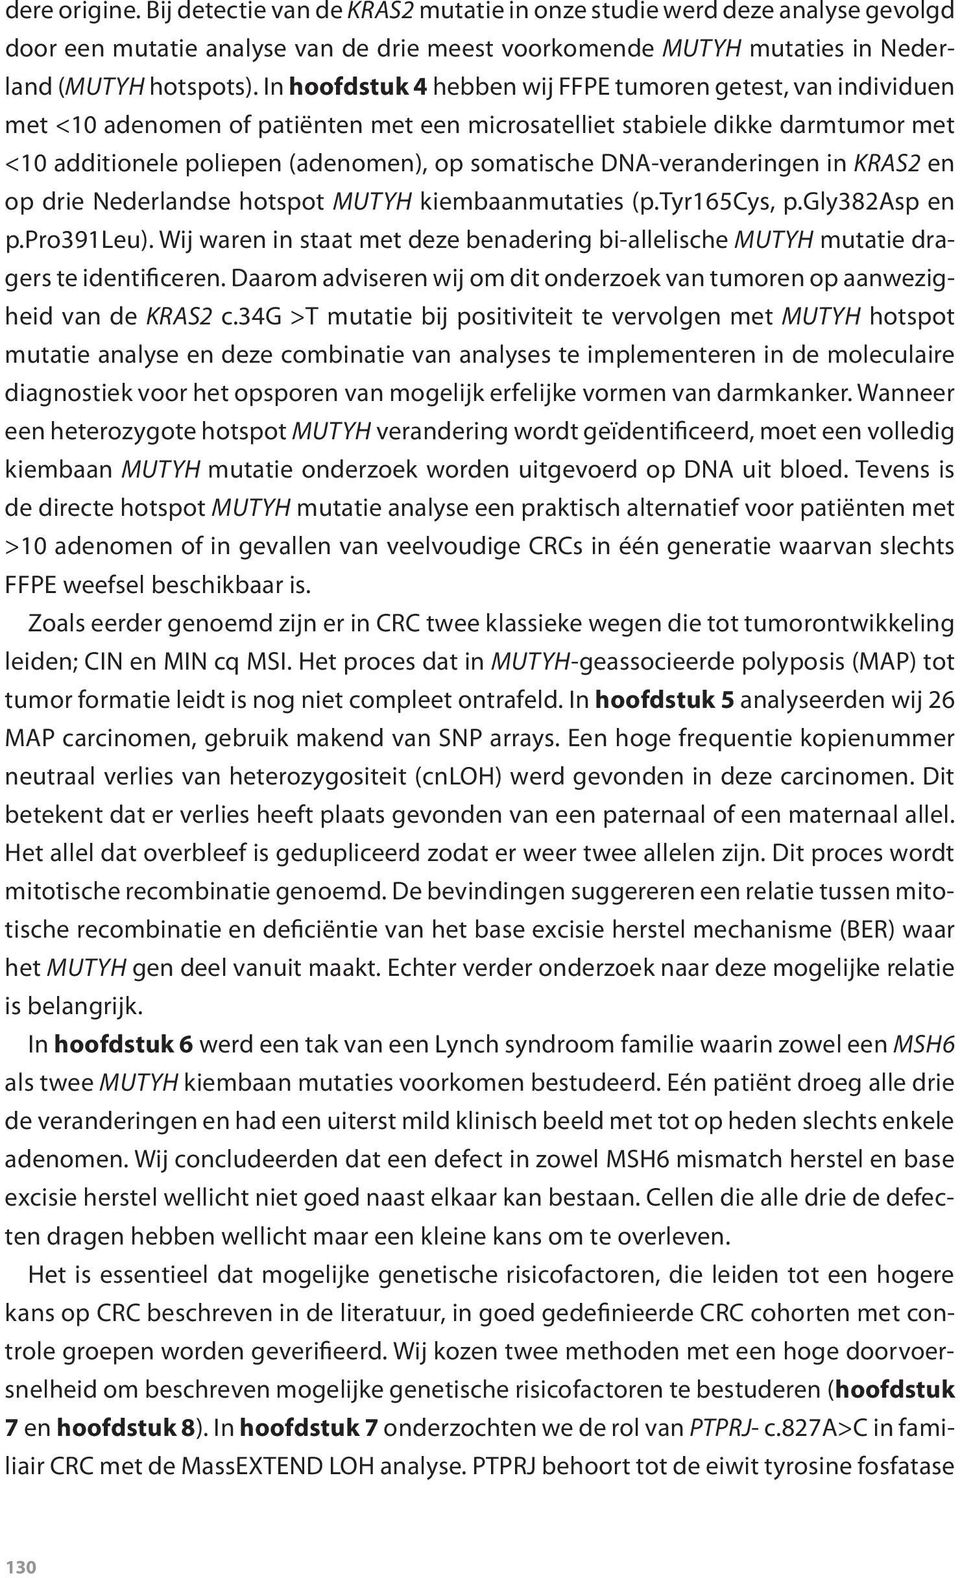 DNA-veranderingen in KRAS2 en op drie Nederlandse hotspot MUTYH kiembaanmutaties (p.tyr165cys, p.gly382asp en p.pro391leu).